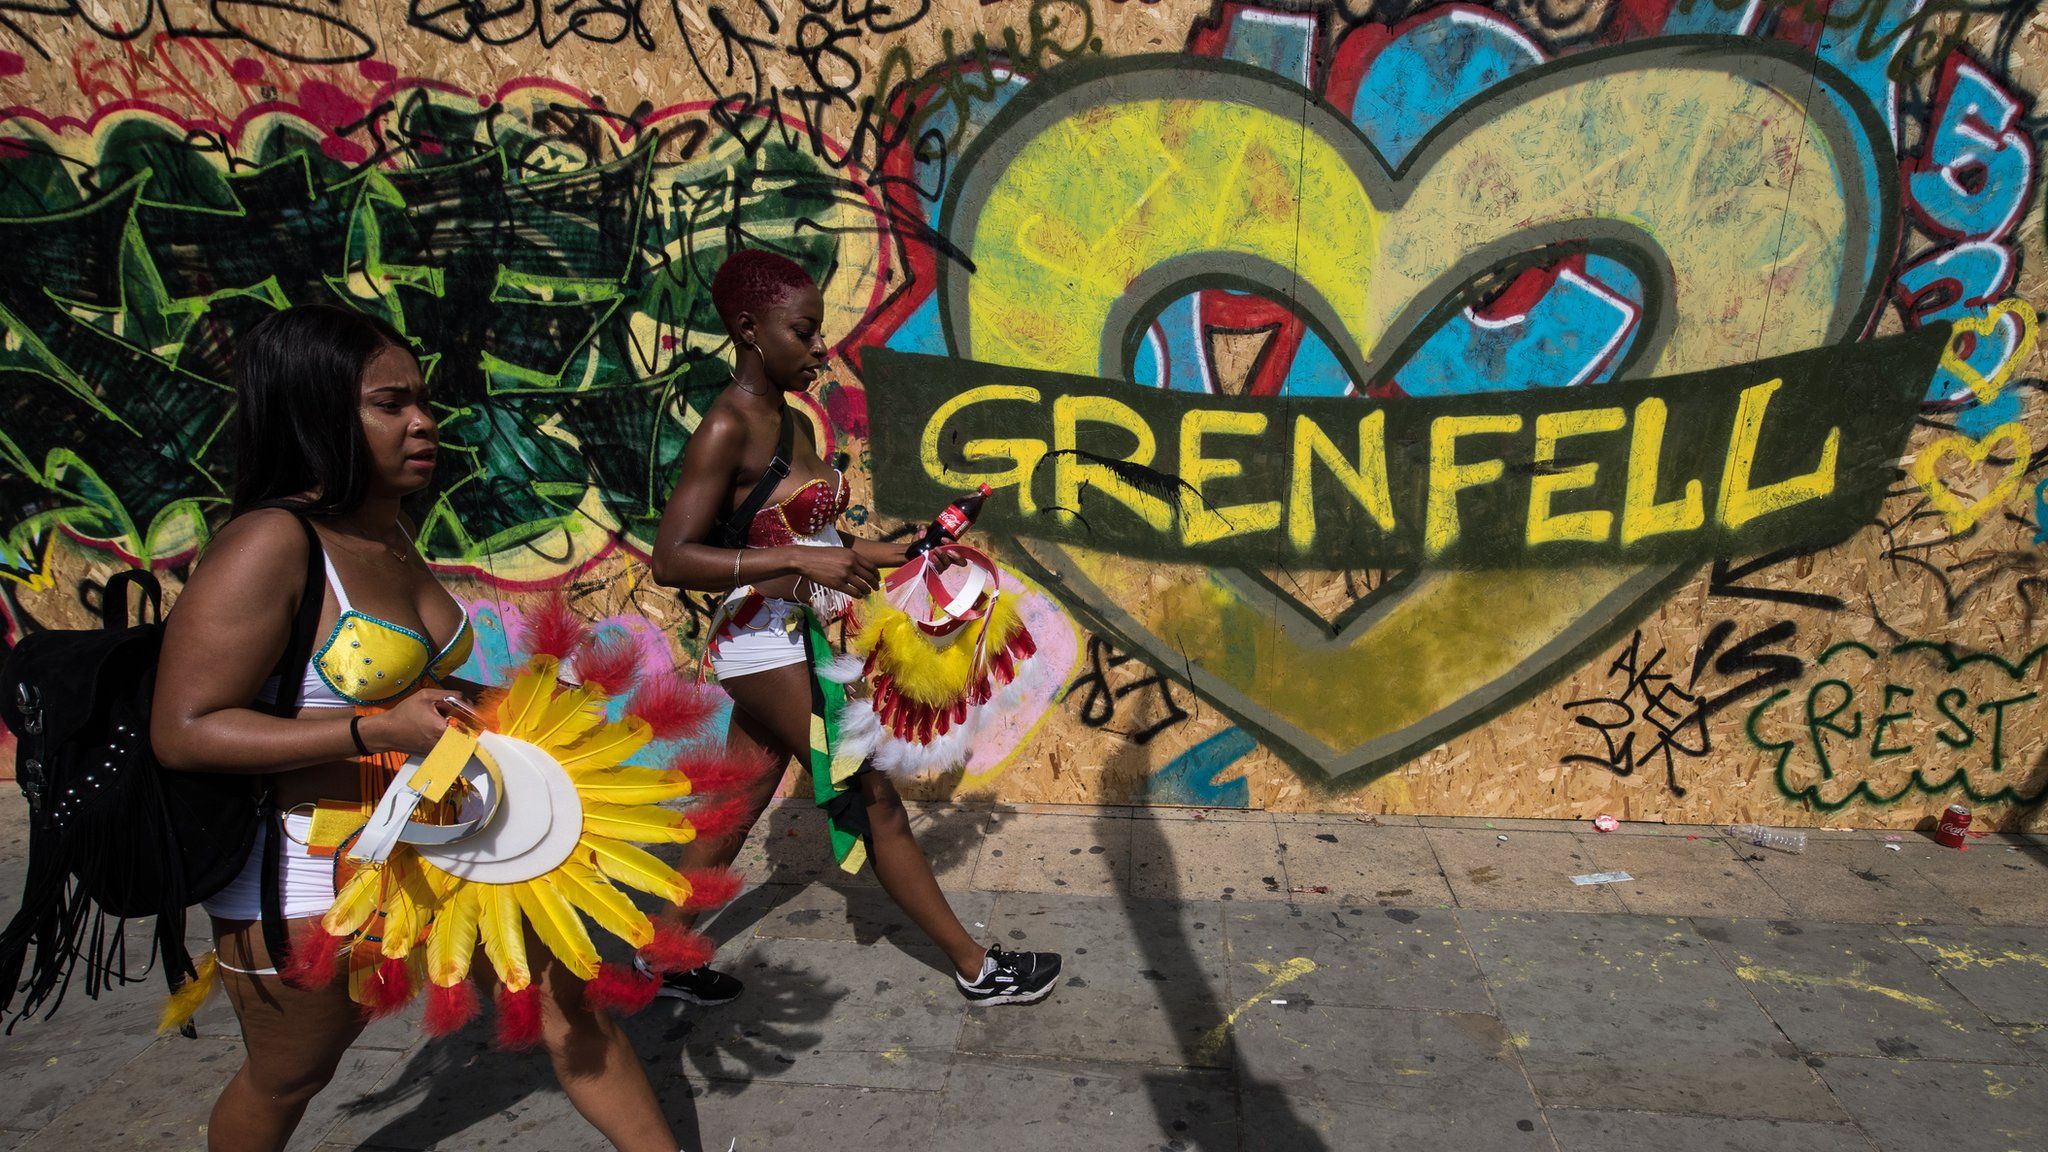 Notting Hill carnival heart shaped mural reading Grenfell